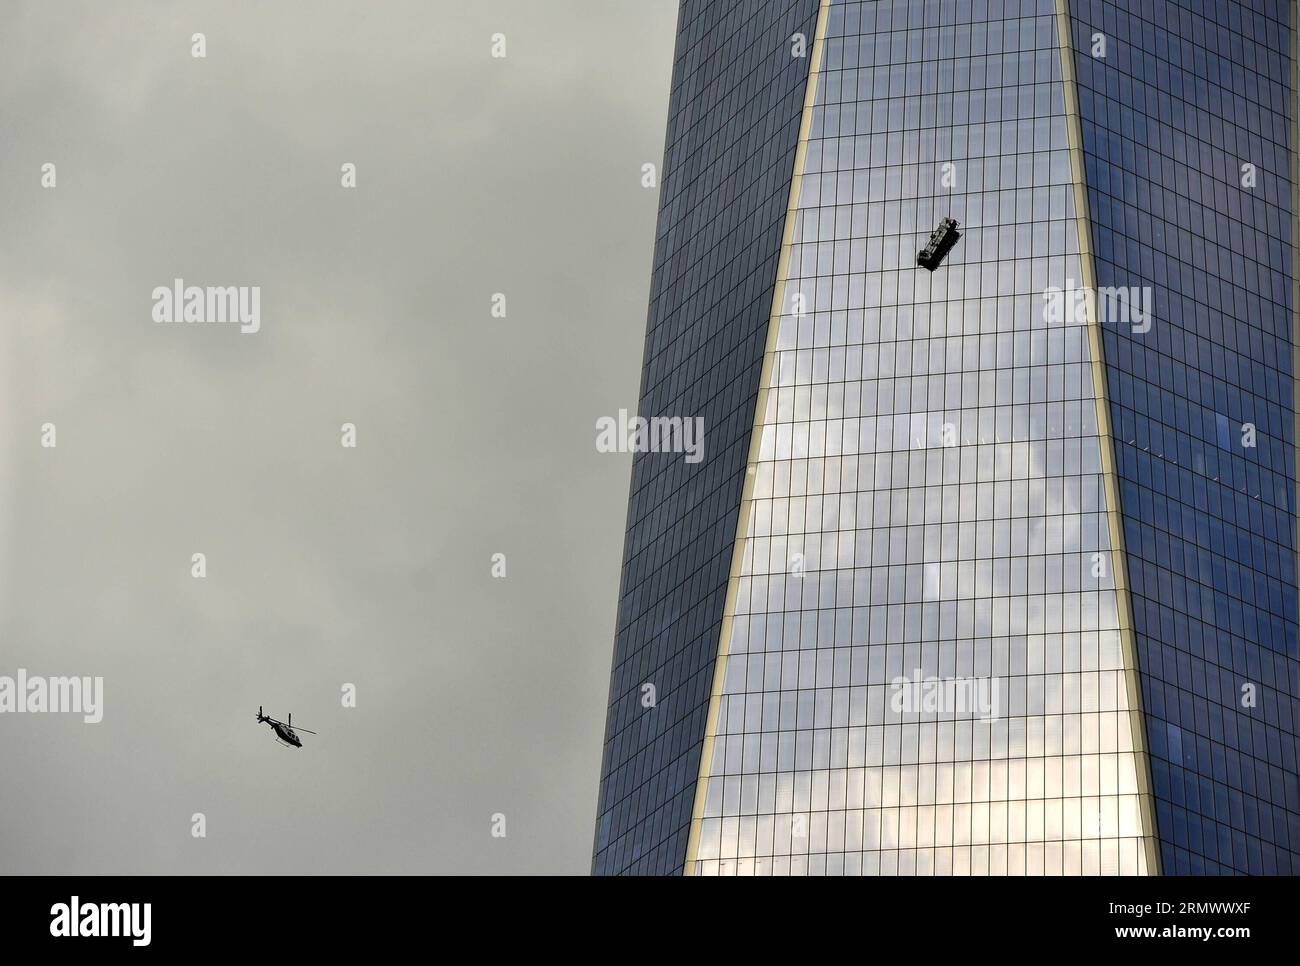 (141112) -- NEW YORK, 12. November 2014 -- Ein Hubschrauber fliegt herum, als ein Gerüst zwei Fensterscheiben trug, die hoch über der Oberfläche des One World Trade Center in New York, den Vereinigten Staaten, am 12. November 2014 herabhängten. Zwei Fensterscheiben waren am Mittwoch eine Stunde lang auf einem Gerüst gefangen, das hoch über der Fassade des One World Trade Center, dem höchsten Gebäude der westlichen Hemisphäre, herabhängte. Feuerwehrleute schnitten durch ein Fenster im 69. Stock nach oben und zogen sie vorsichtig in Sicherheit. ) US-NEW YORK-ONE WORLD TRADE CENTER-ACCIDENT-WINDOW-WASCHERS WangxLei PUBLICATIONxNOTxINxCHN New YORK Nov 12 2014 A Helicopte Stockfoto